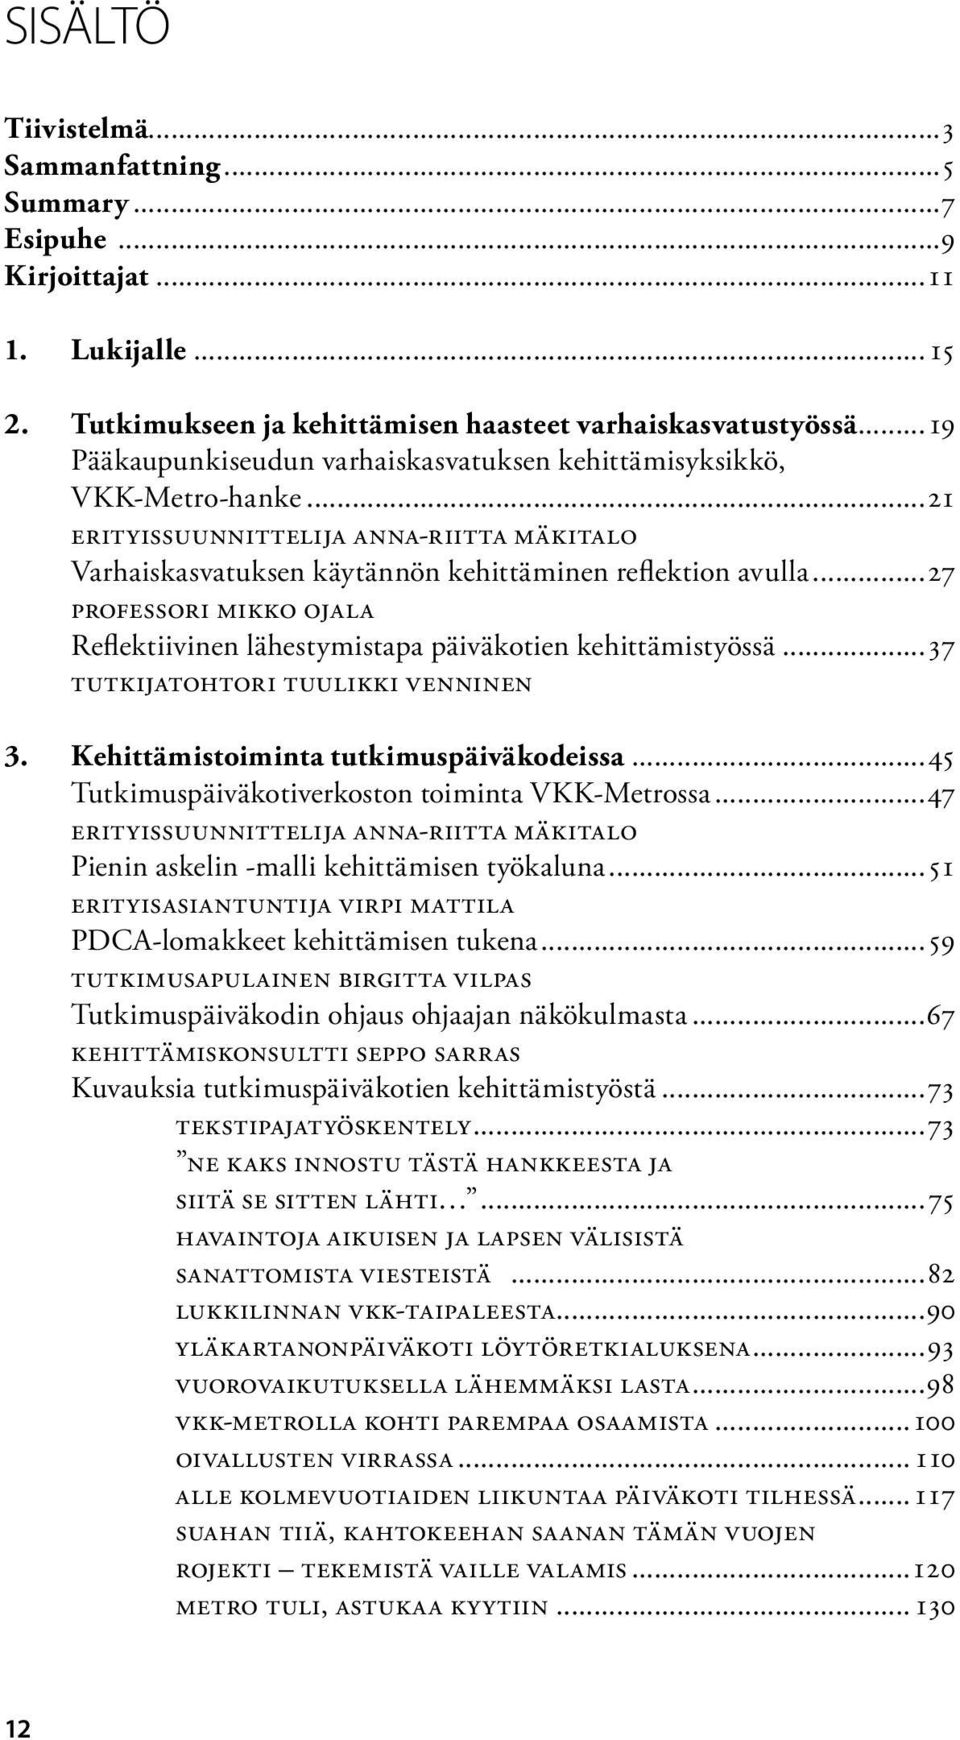 ..27 professori Mikko Ojala Reflektiivinen lähestymistapa päiväkotien kehittämistyössä...37 Tutkijatohtori Tuulikki Venninen 3. Kehittämistoiminta tutkimuspäiväkodeissa.